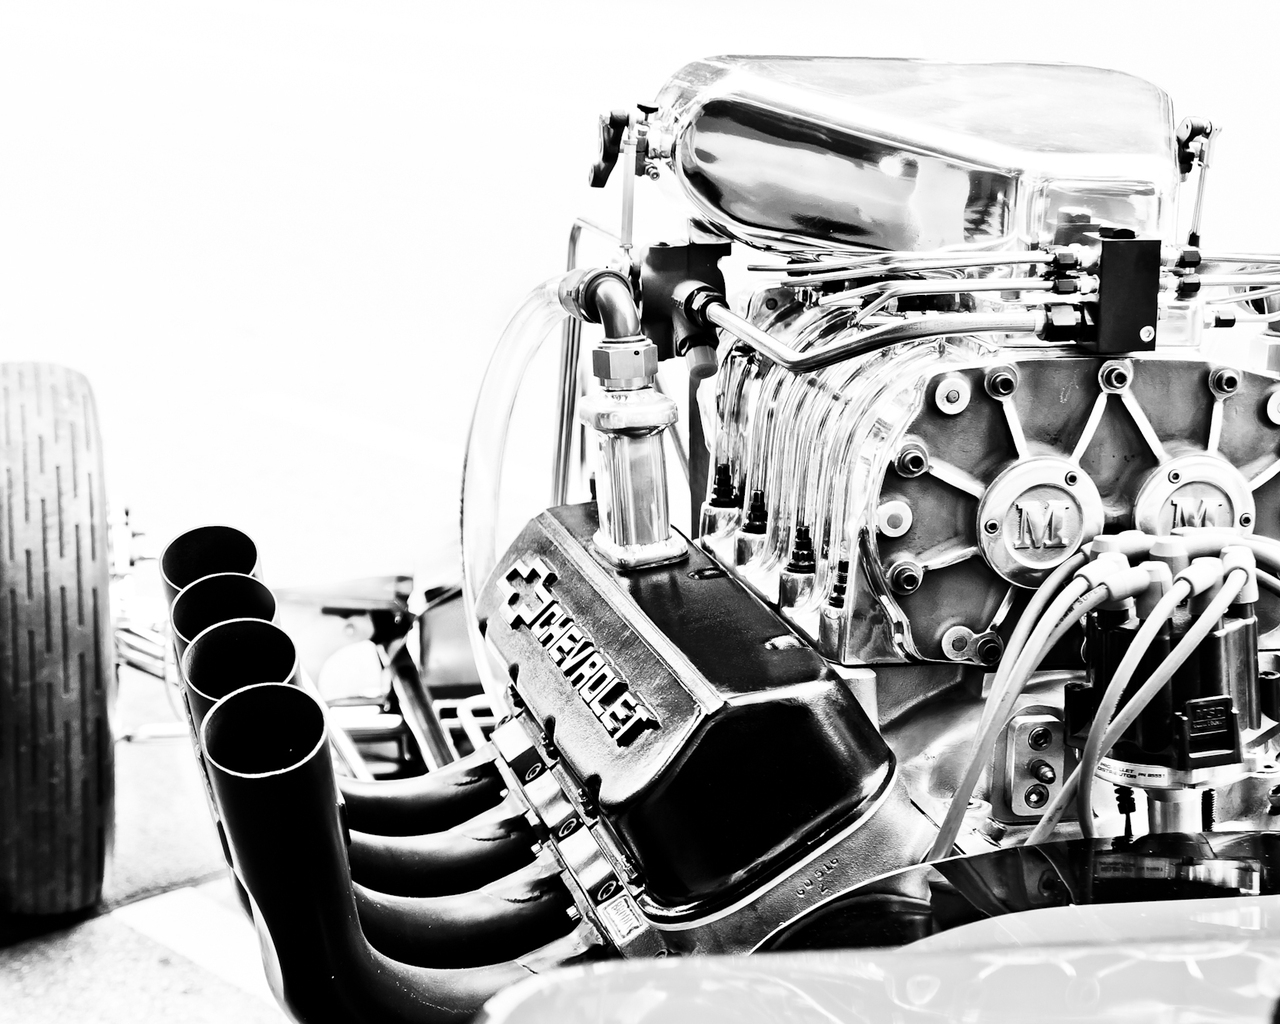 Chevrolet Corvette Engine for 1280 x 1024 resolution